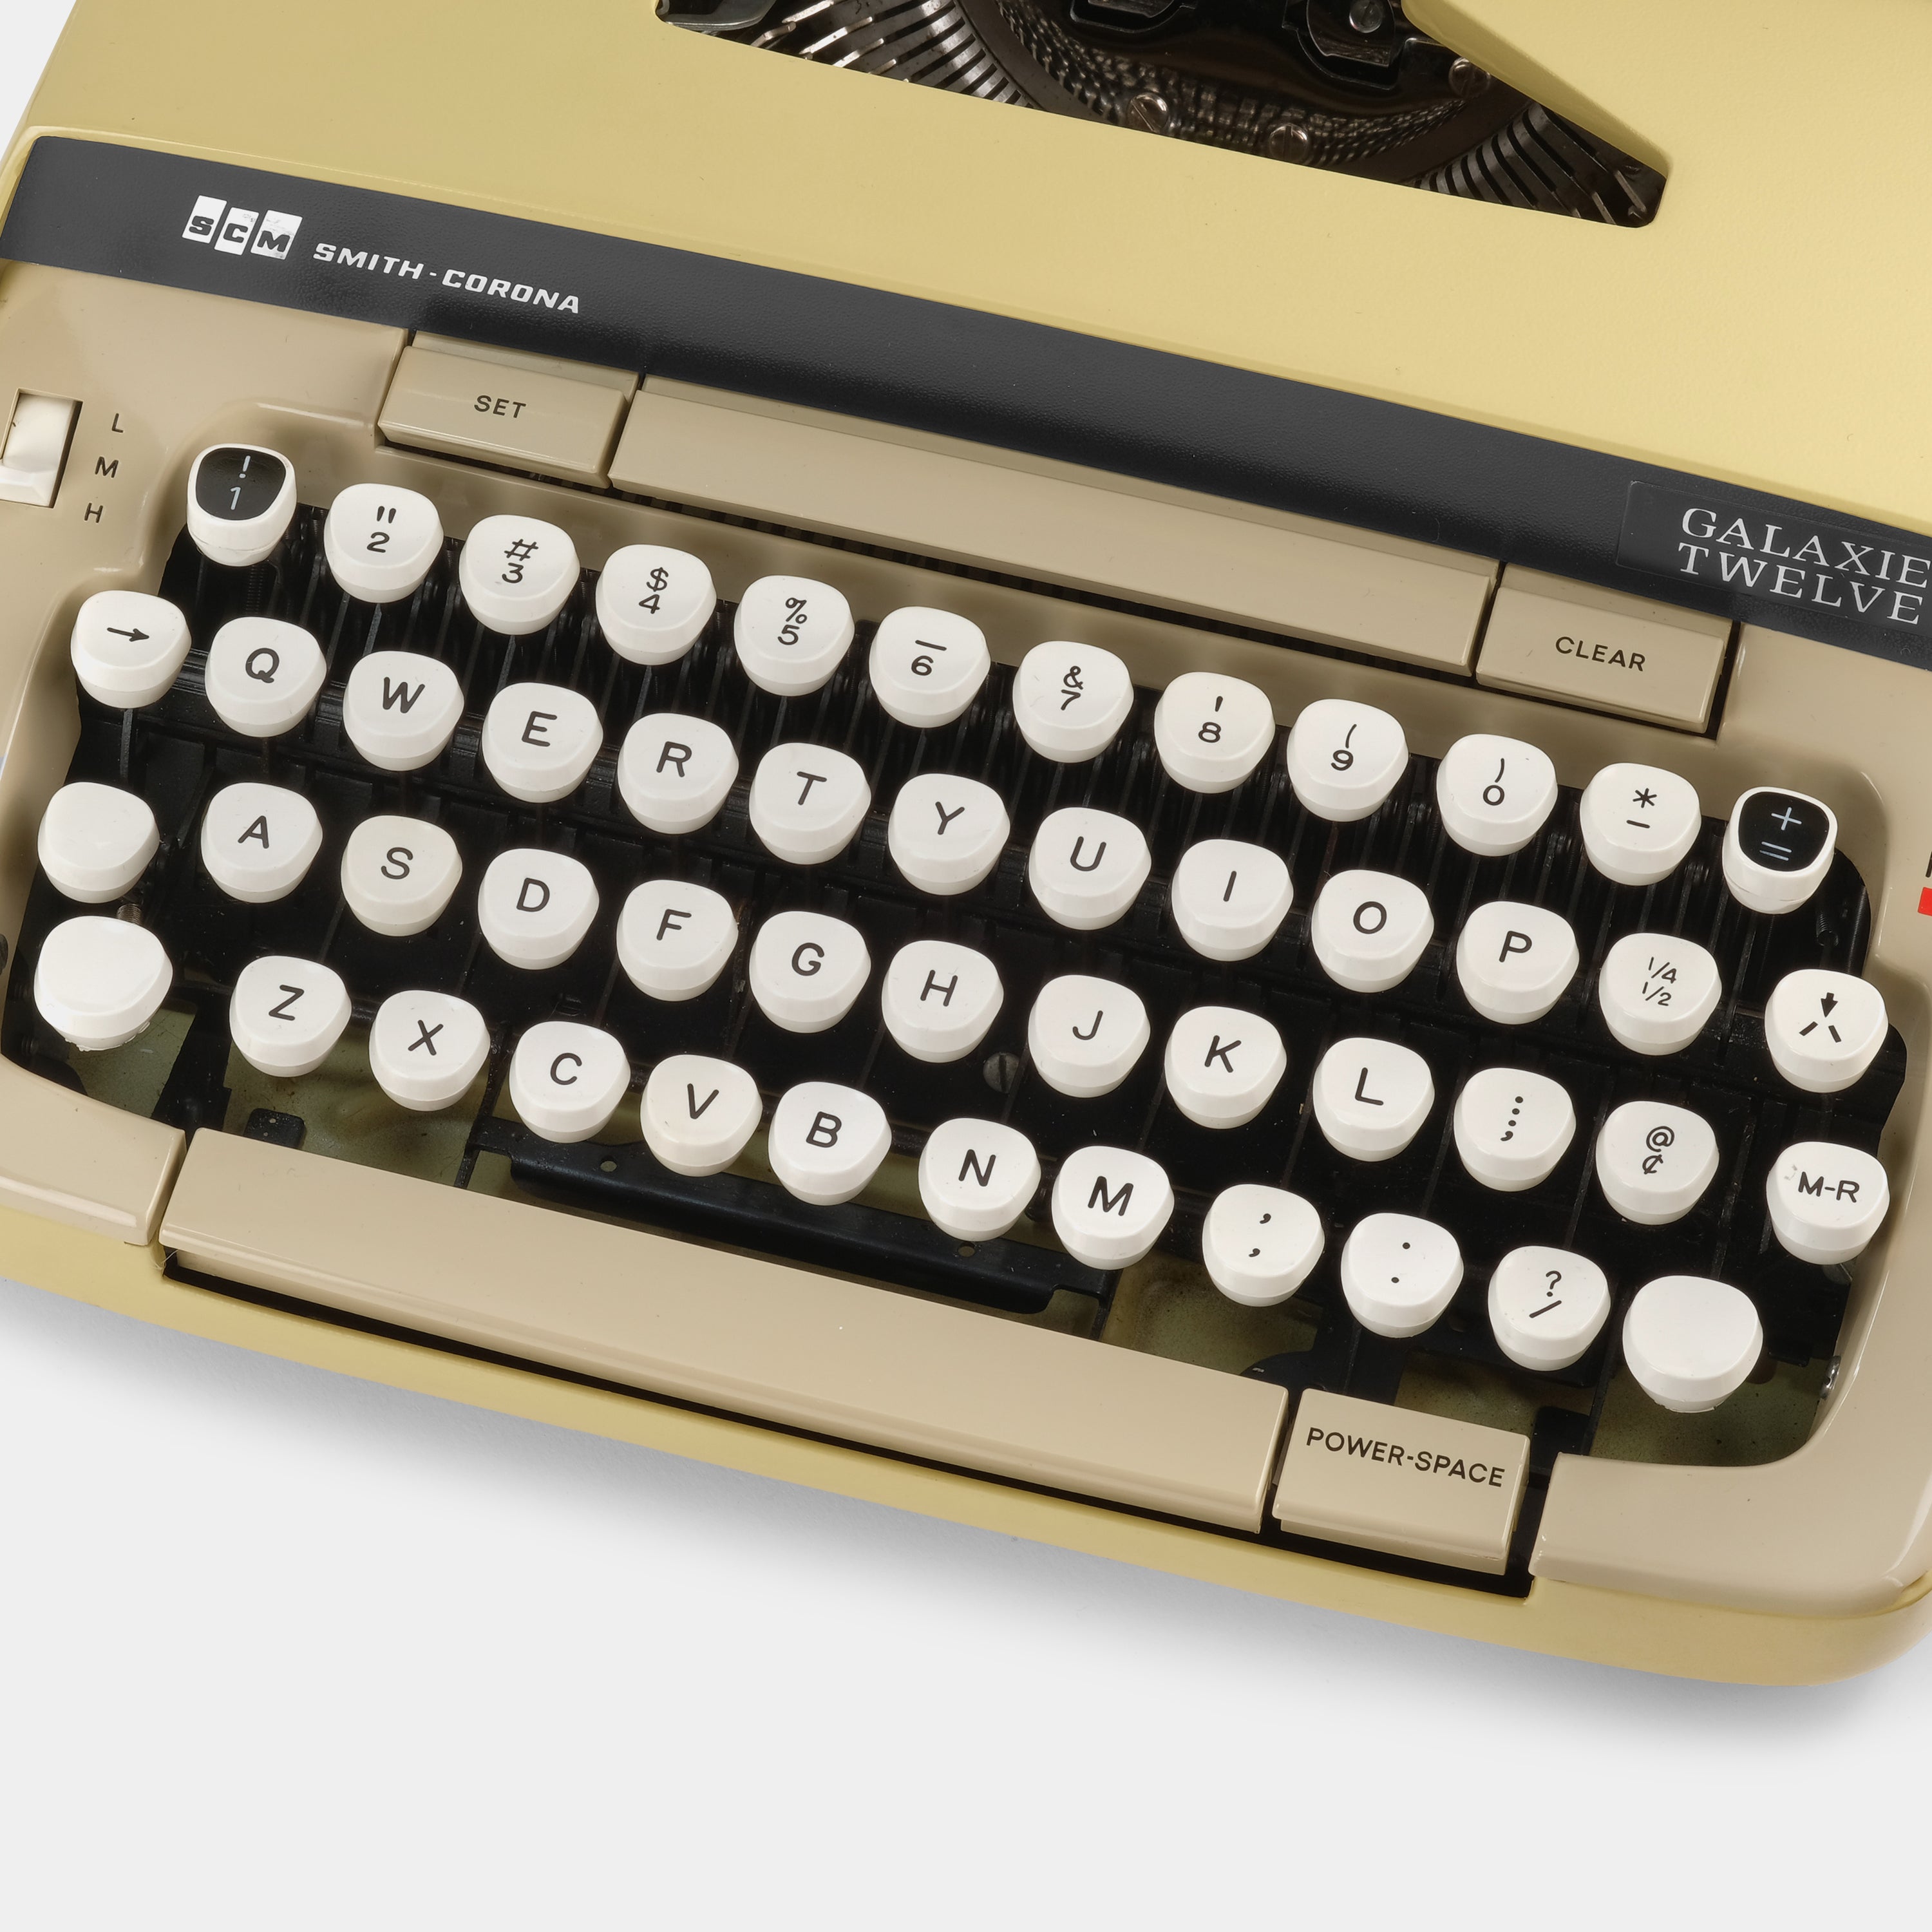 Smith-Corona Galaxie XII Mustard Yellow Manual Typewriter